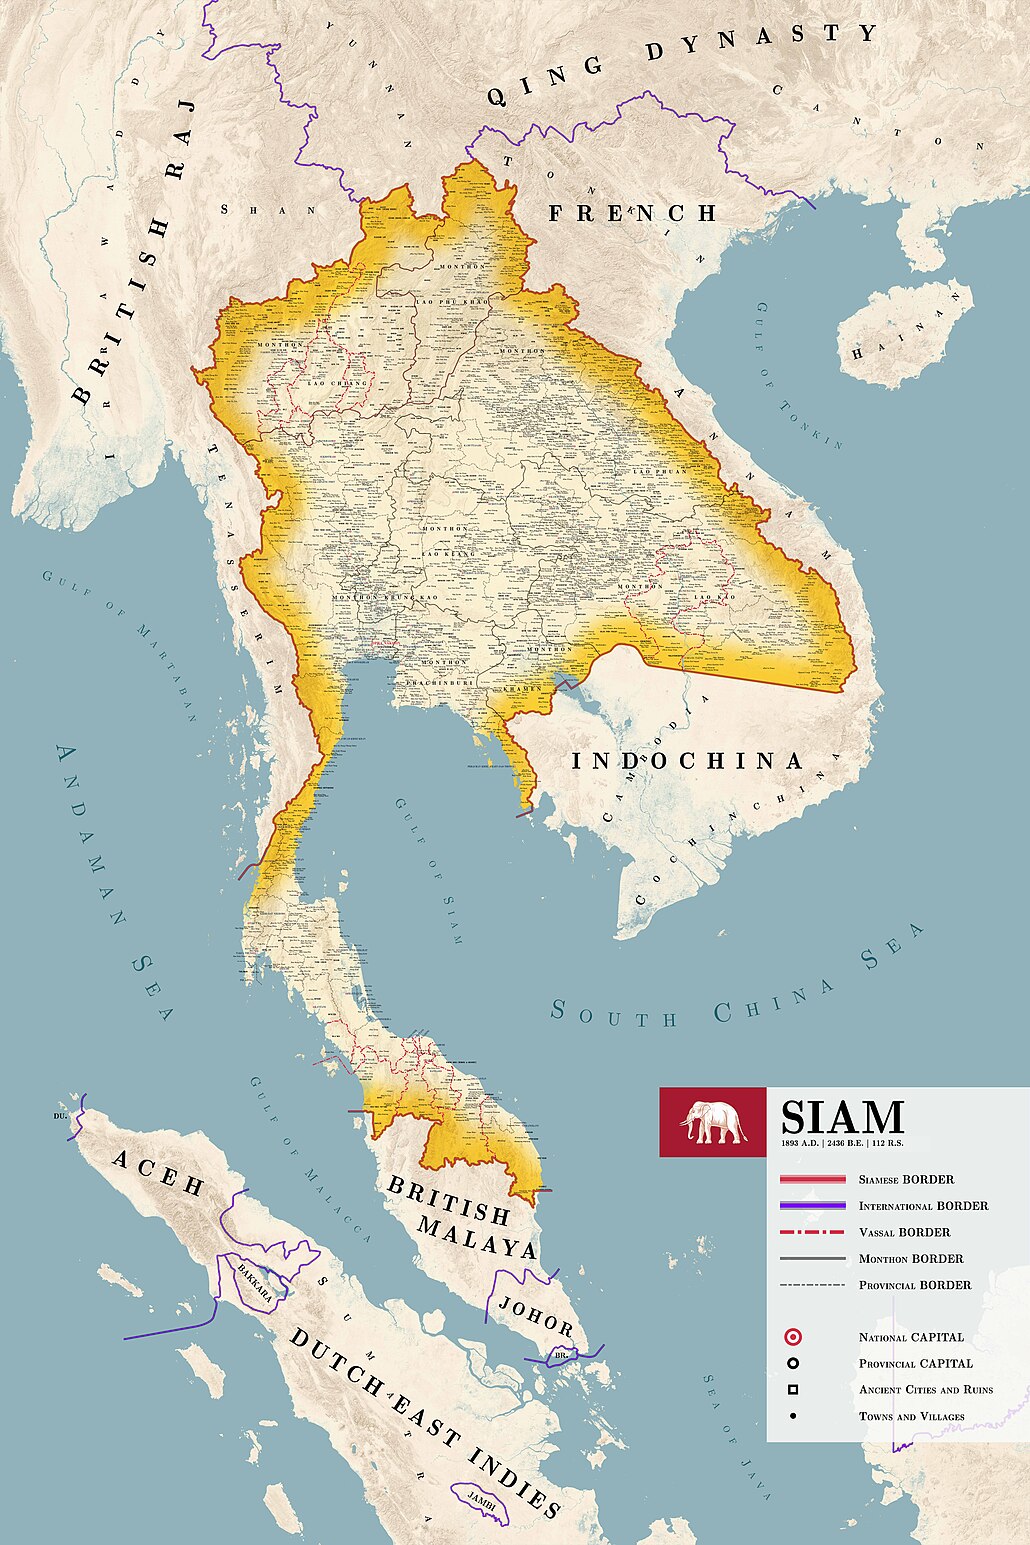 Provinces of Siam (Thailand) in 1871